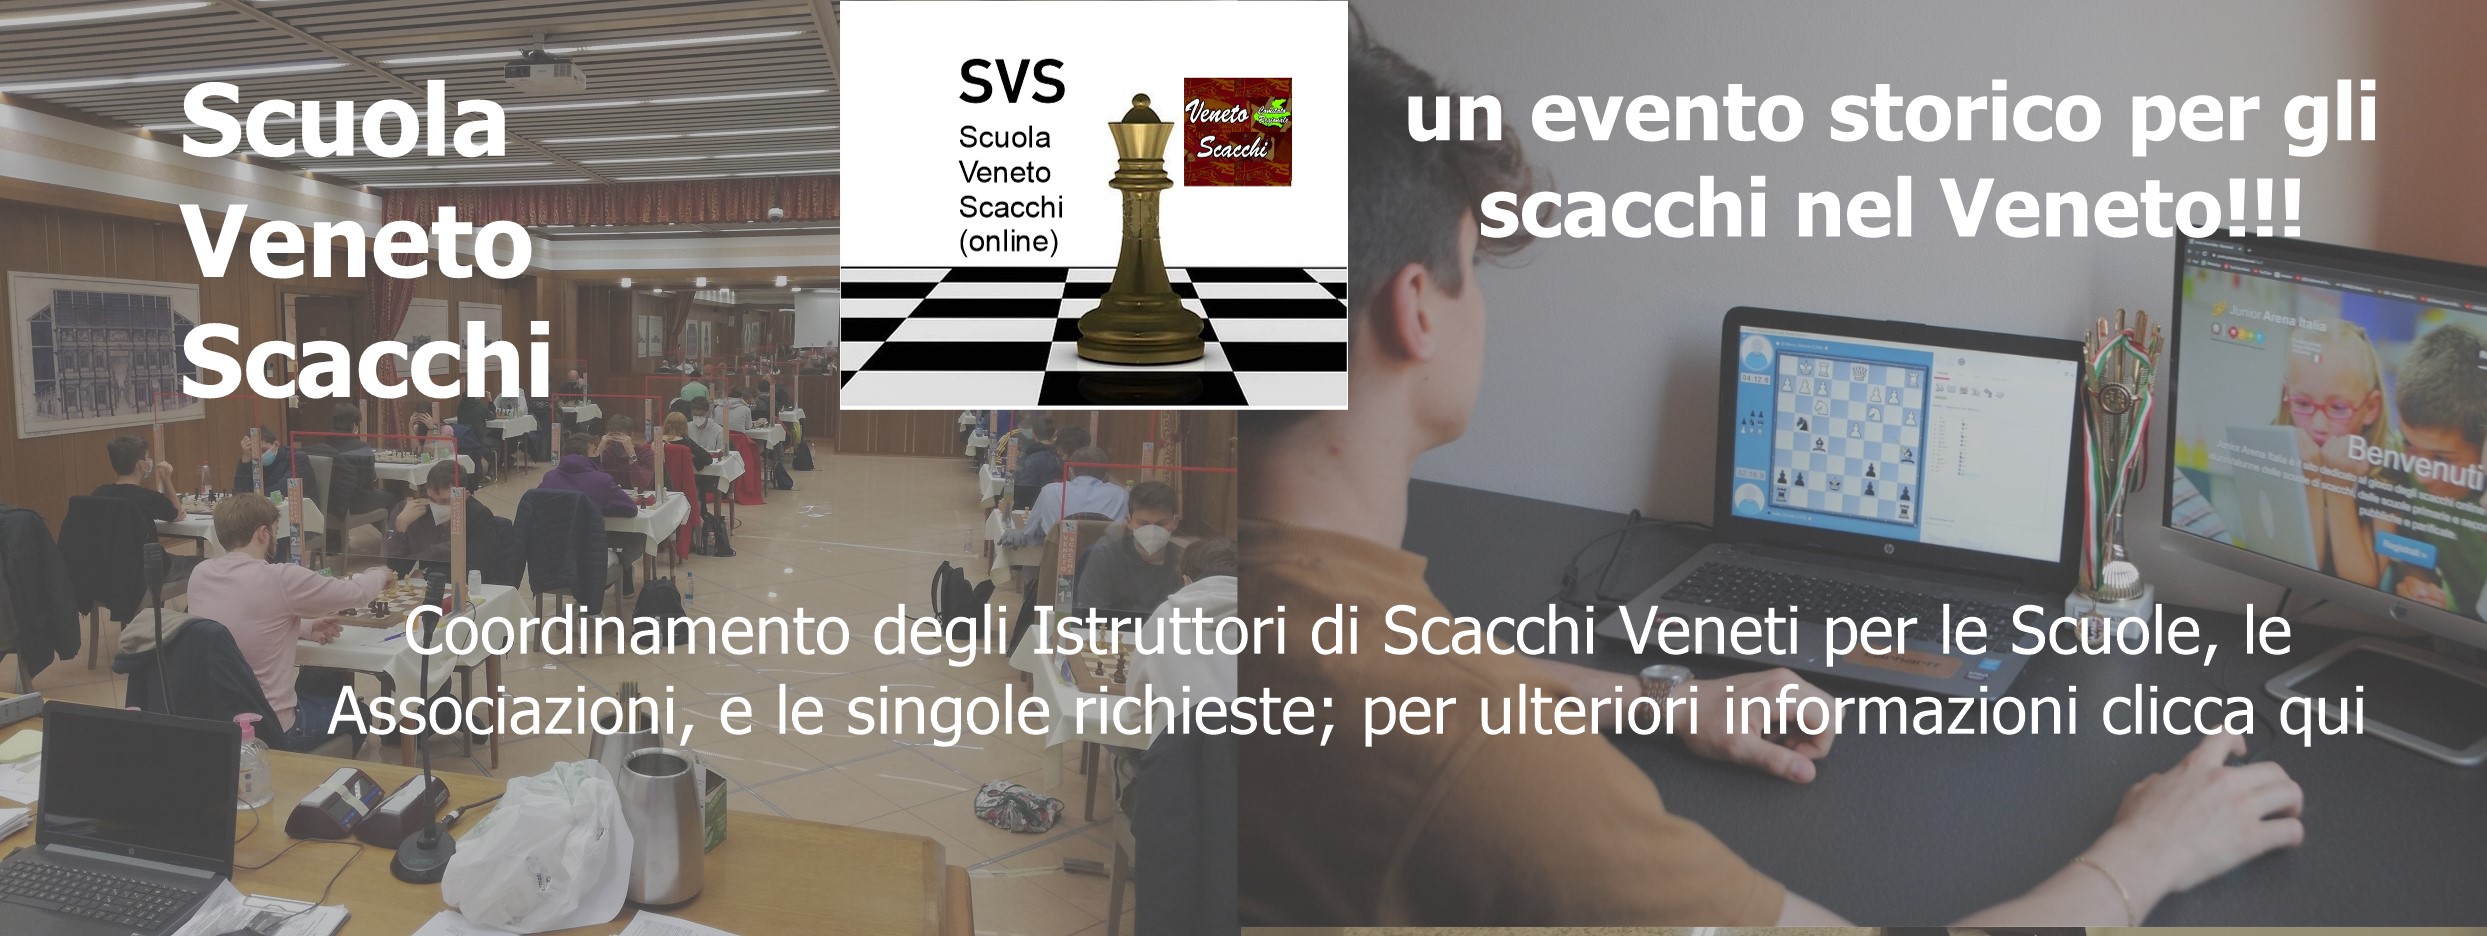 Scuola Veneto Scacchi